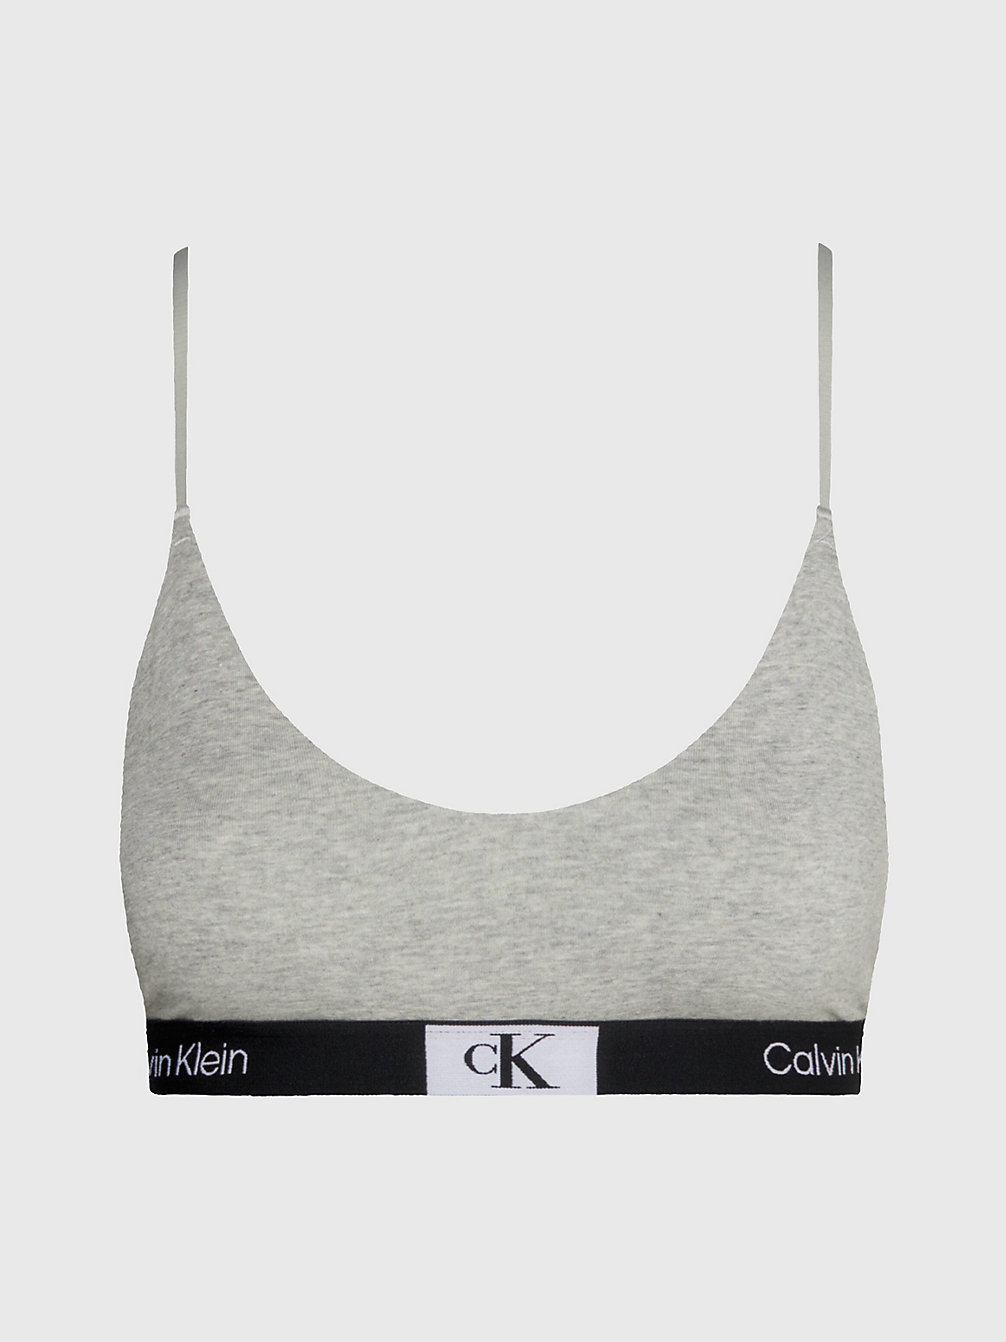 GREY HEATHER String-Bralette - Ck96 undefined Damen Calvin Klein